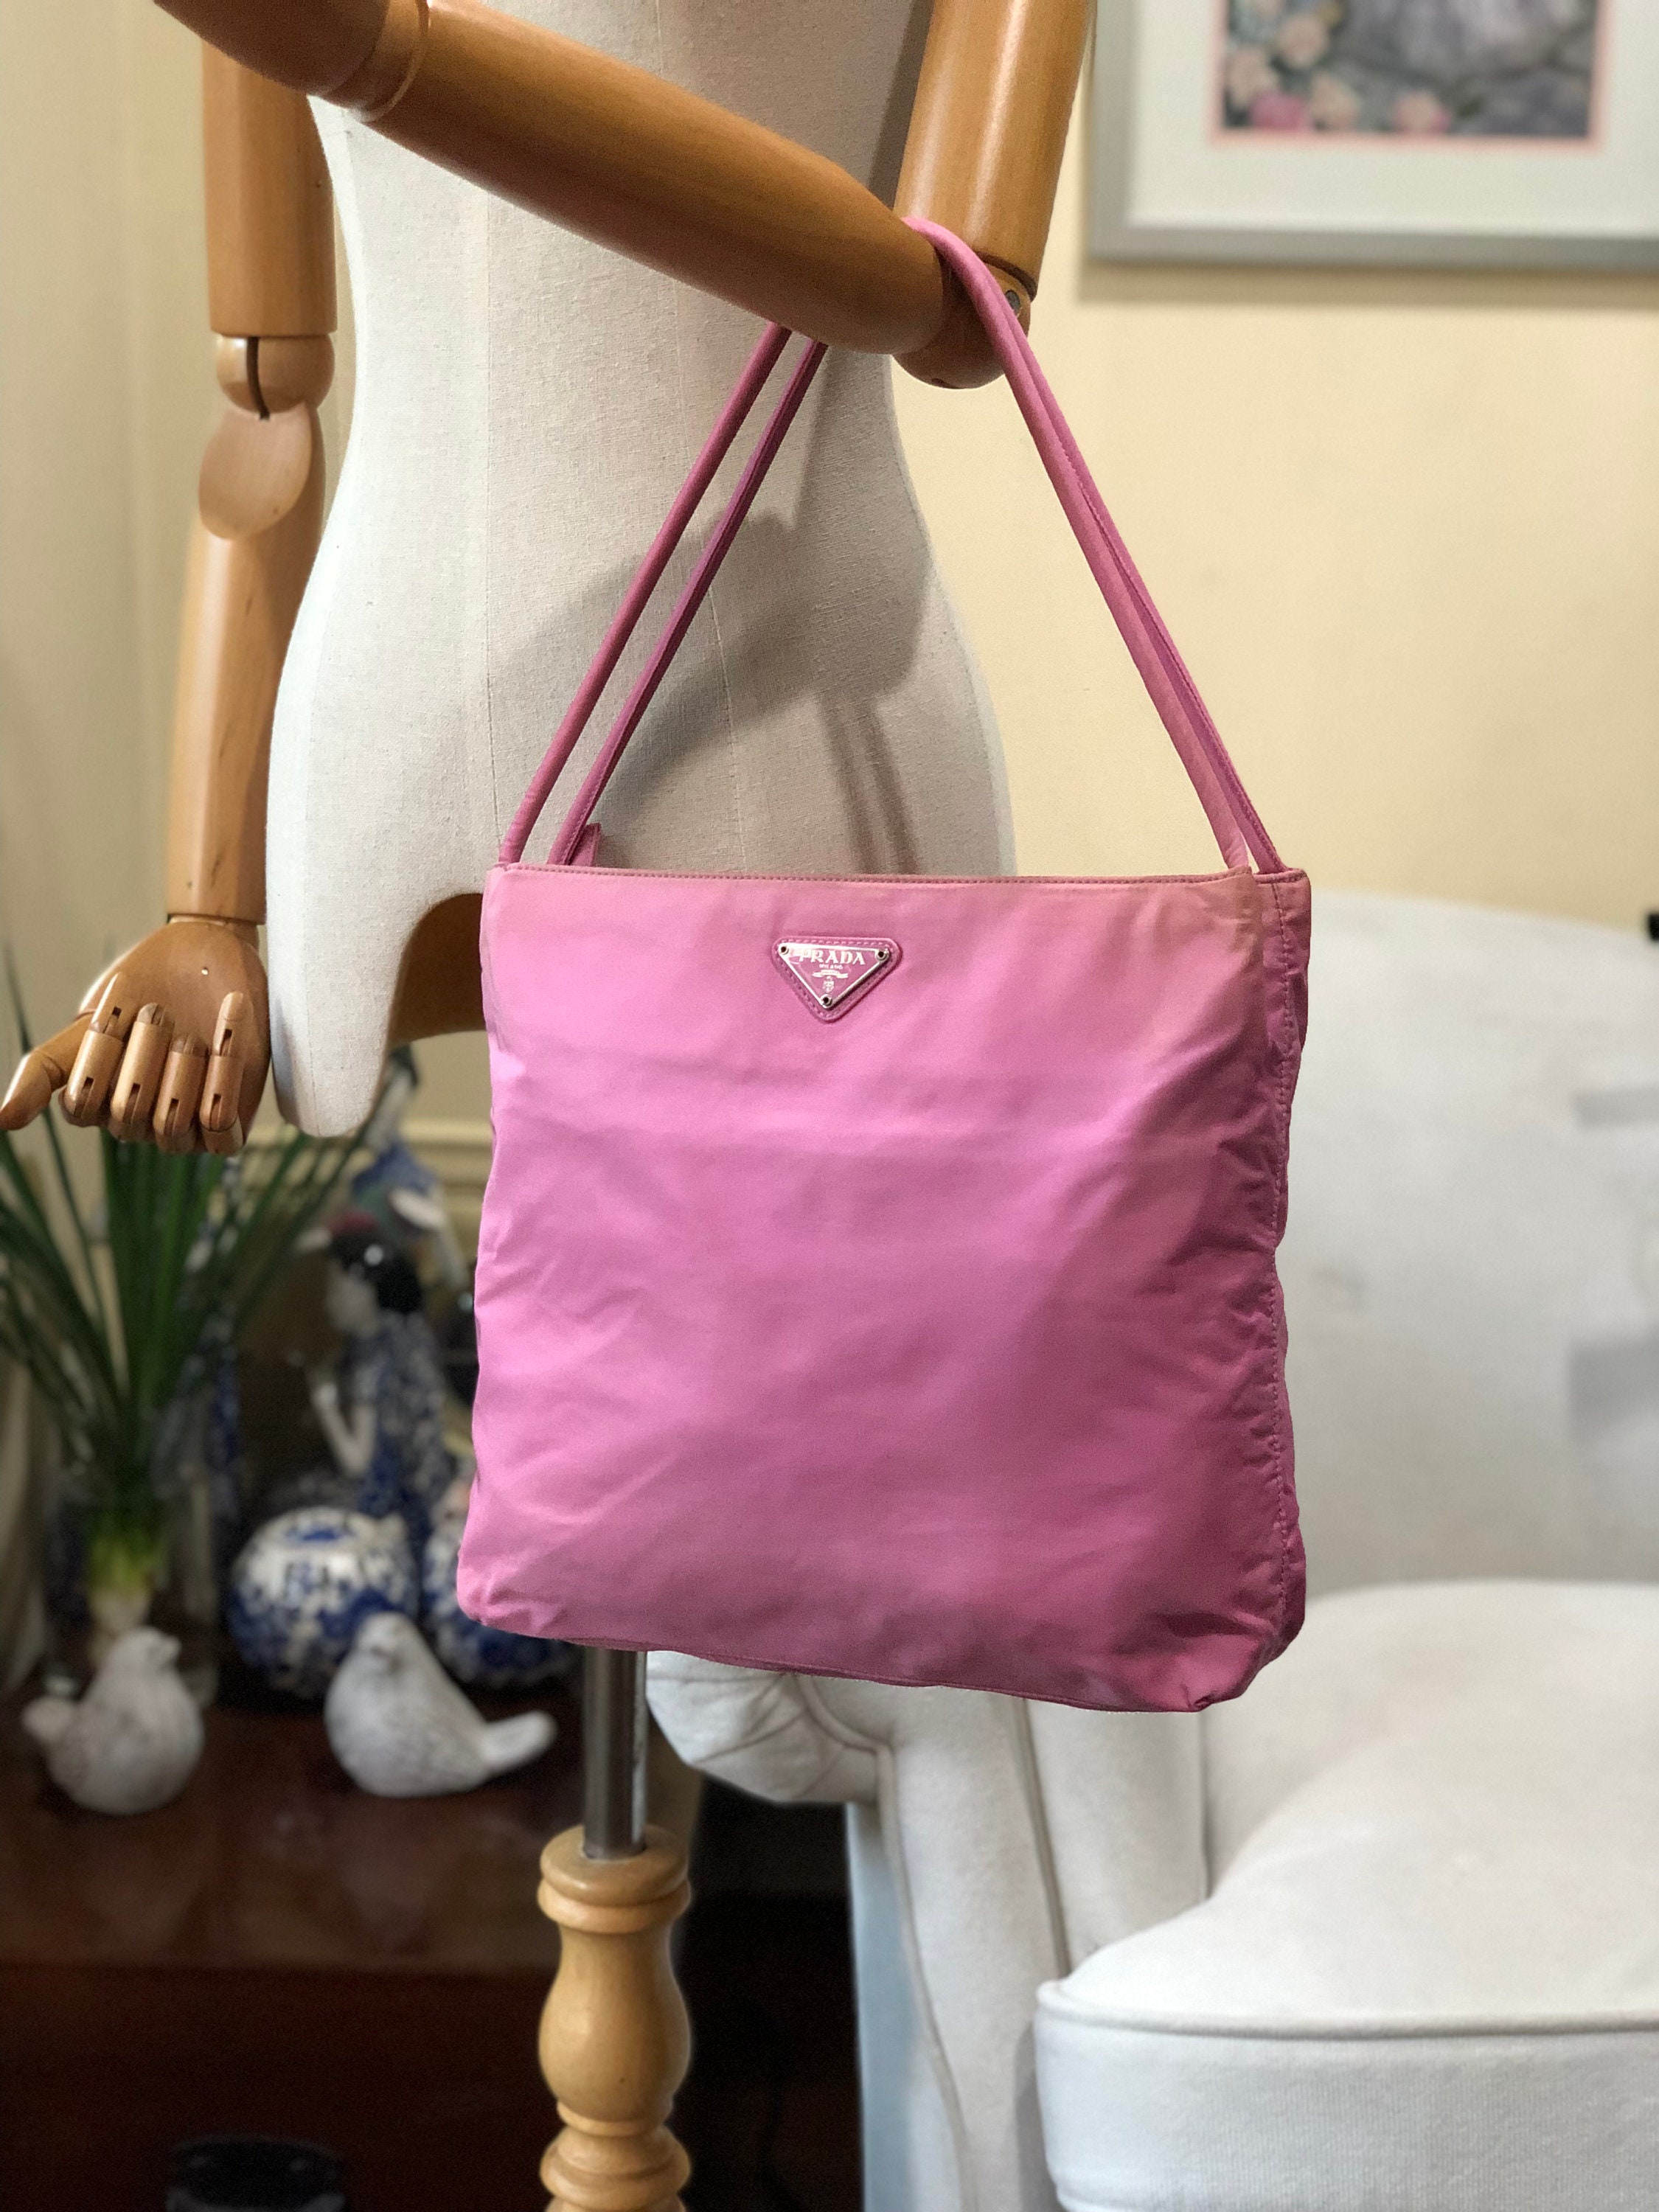 Prada Pink Nylon Tote Authentic Shoulder Bag 